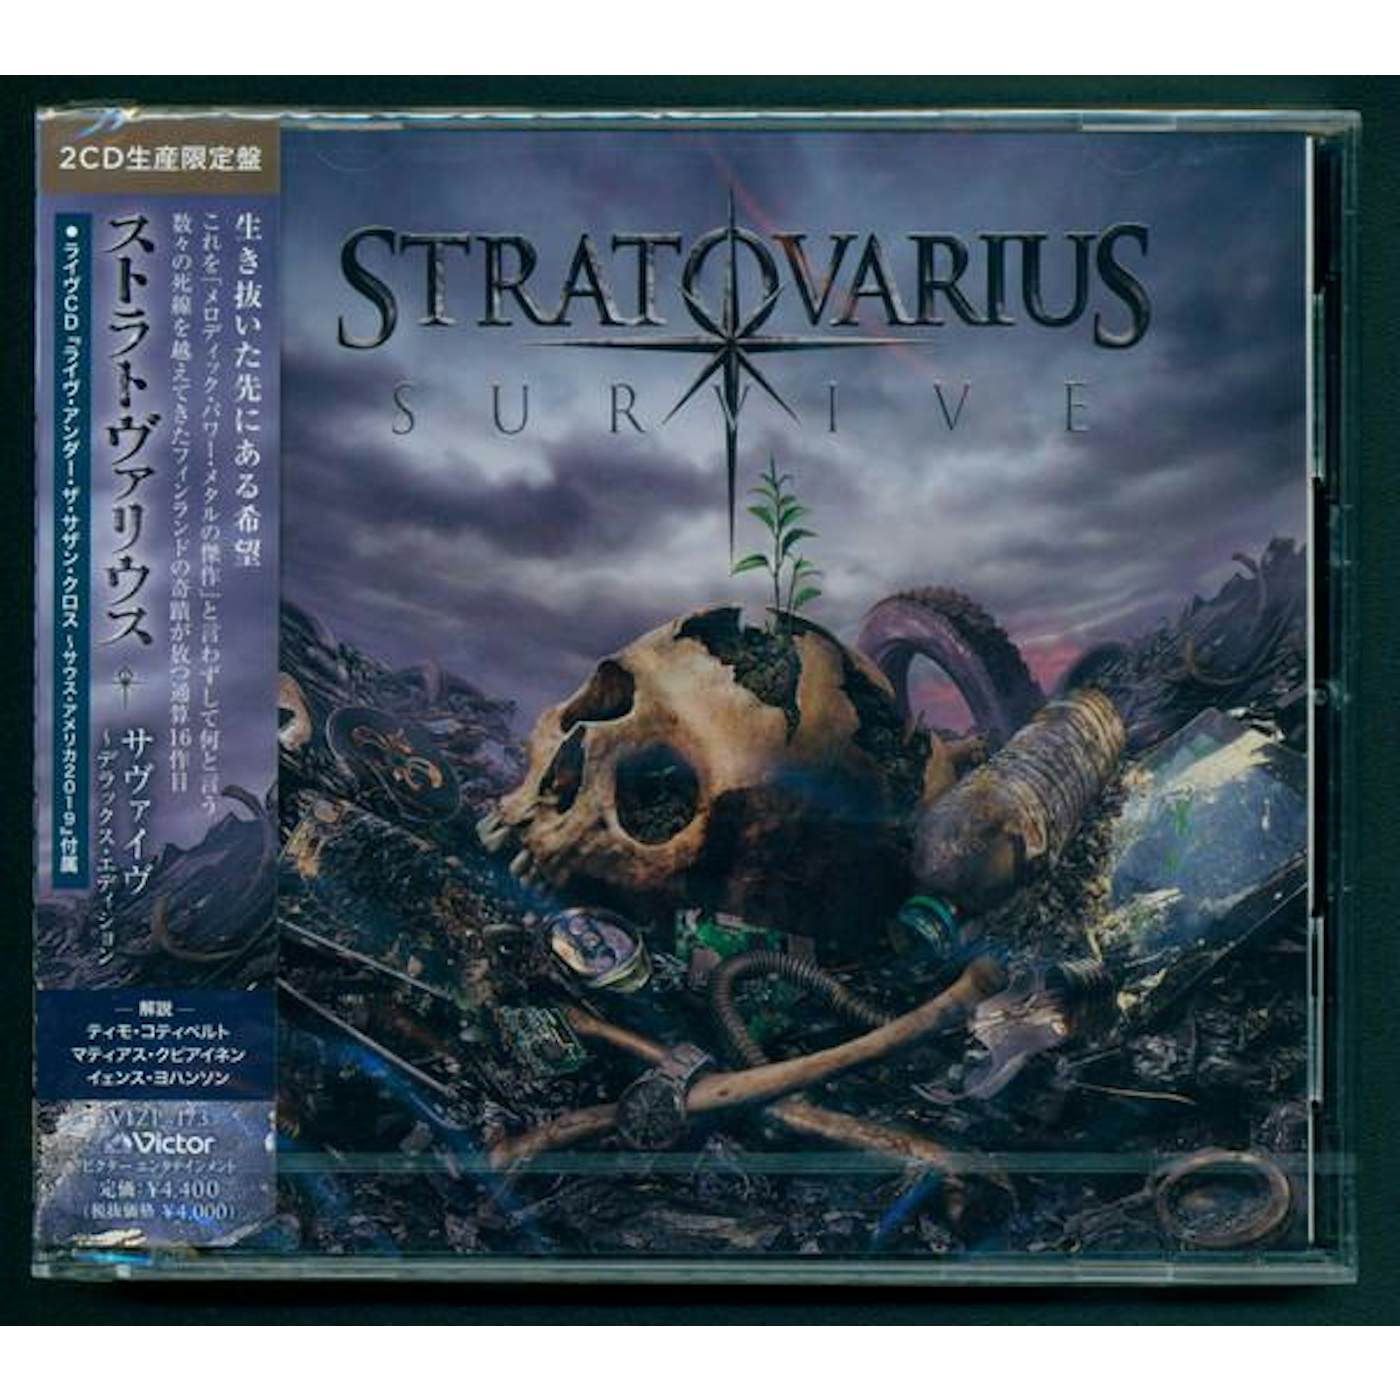 Stratovarius discography - Wikipedia